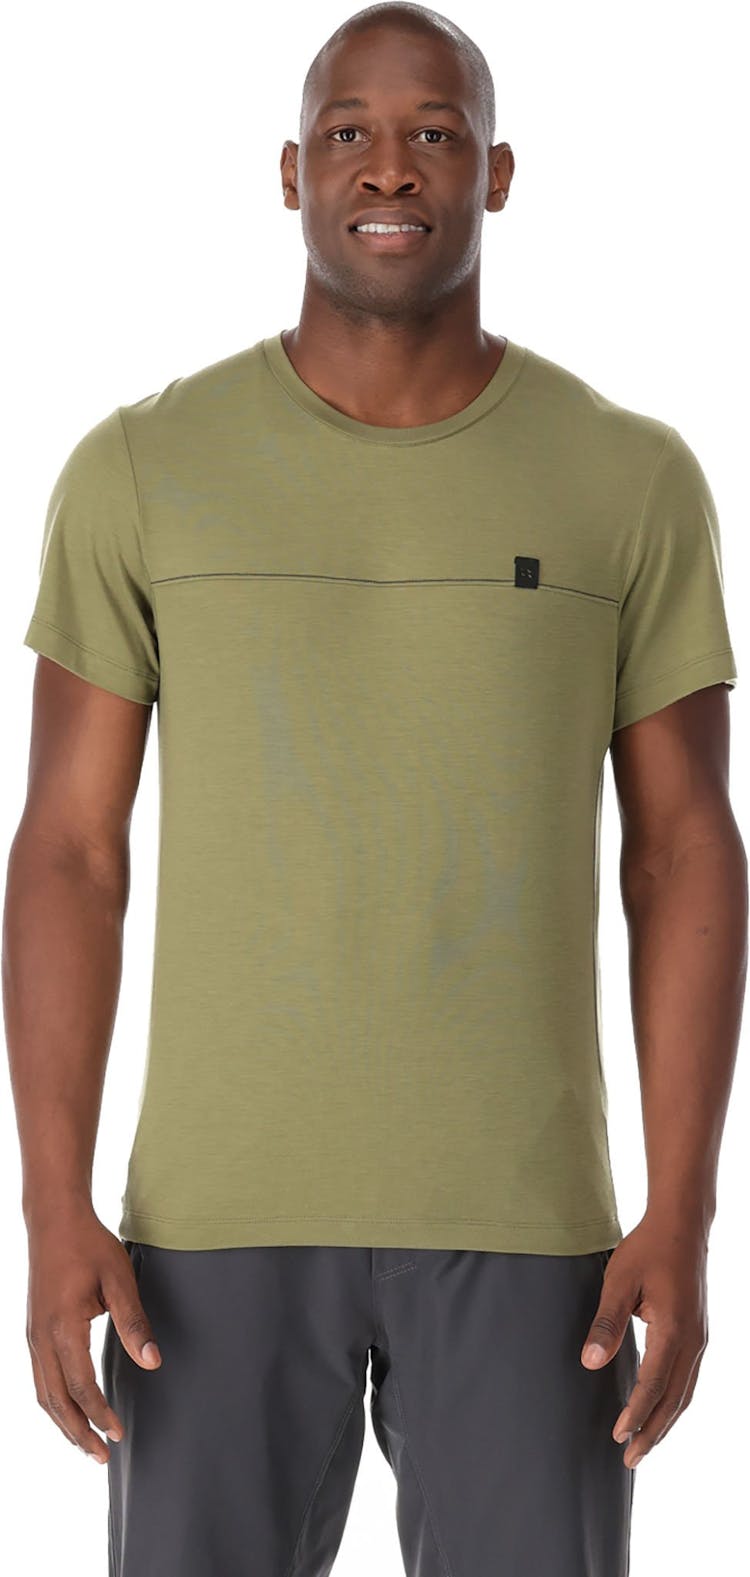 Numéro de l'image de la galerie de produits 5 pour le produit T-shirt latéral - Homme